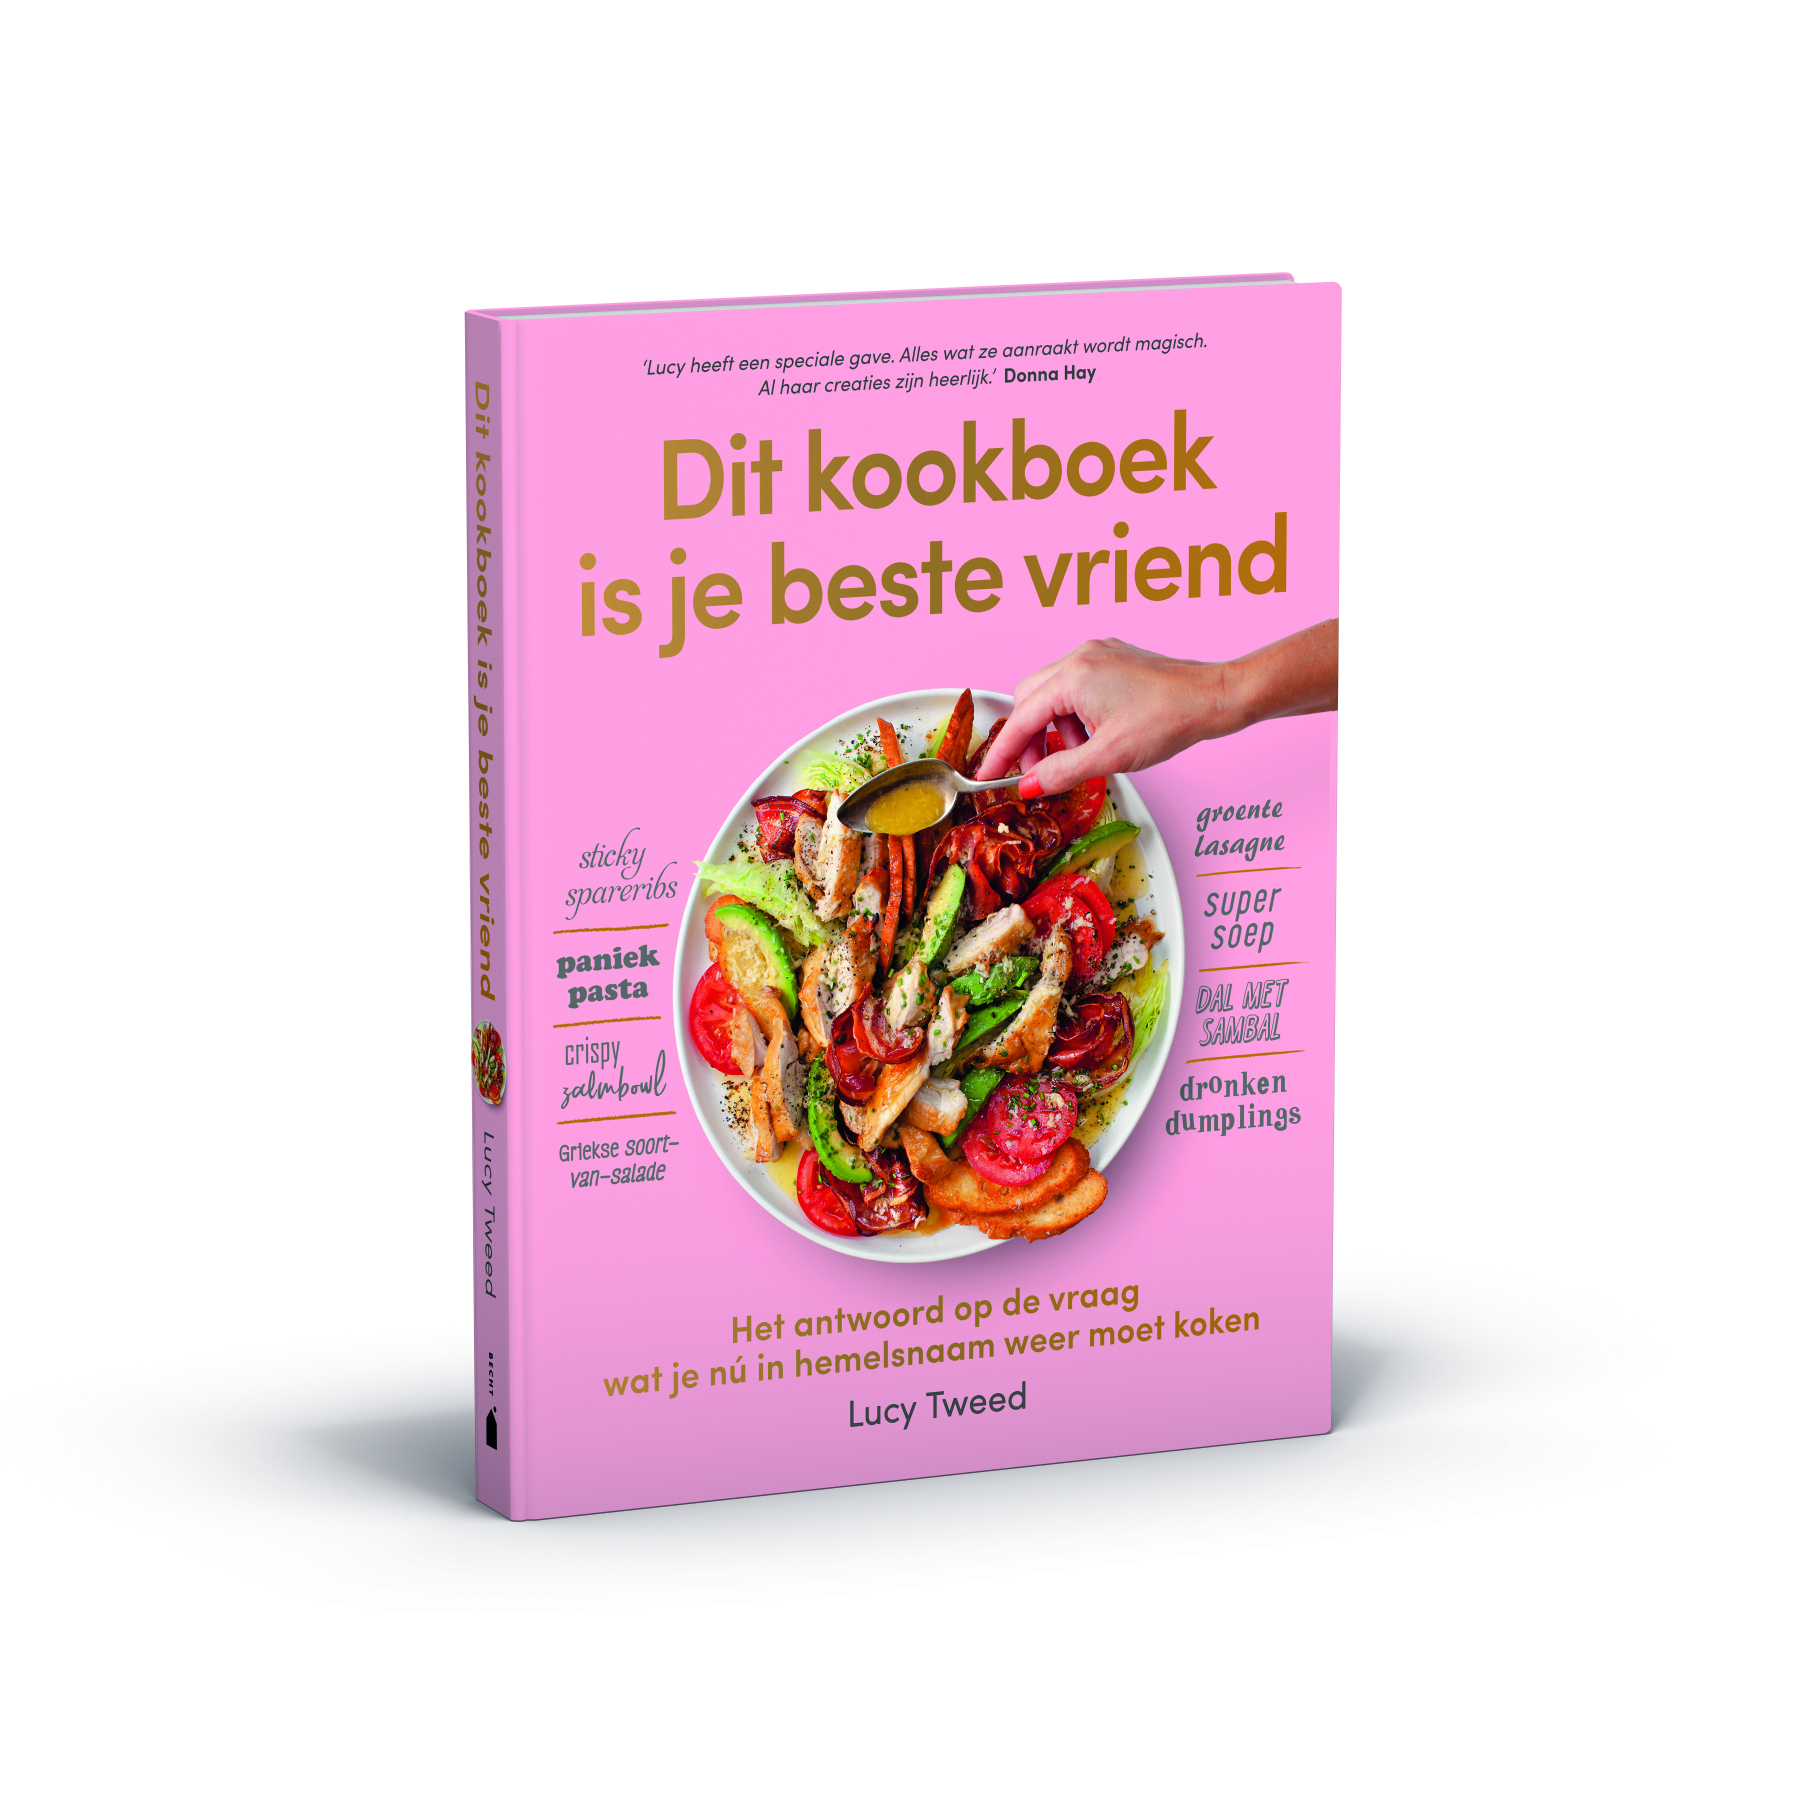 dit kookboek is je beste vriend 3d.jpg